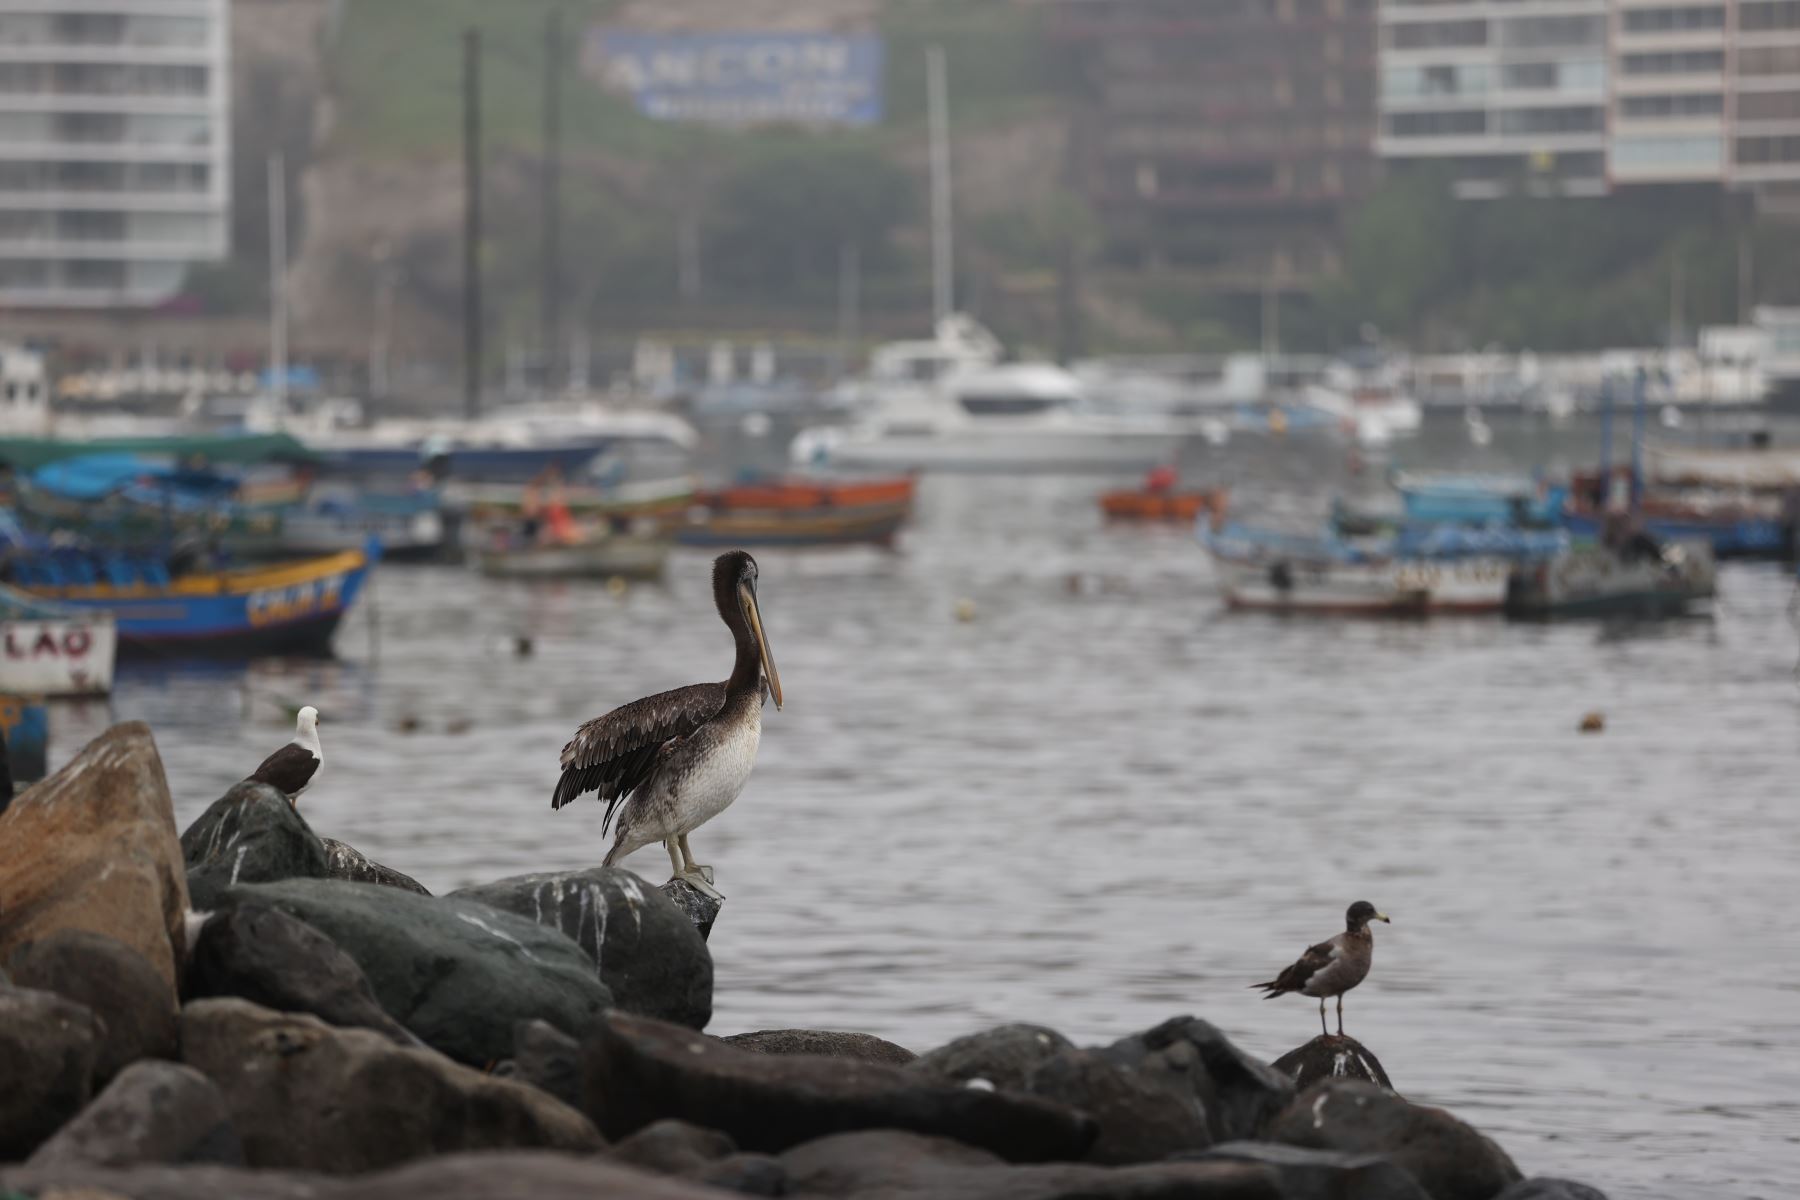 Las especies de aves como el pelícano se encuentran en peligro debido al derrame de petróleo. Foto: ANDINA/Jhonel Rodríguez Robles